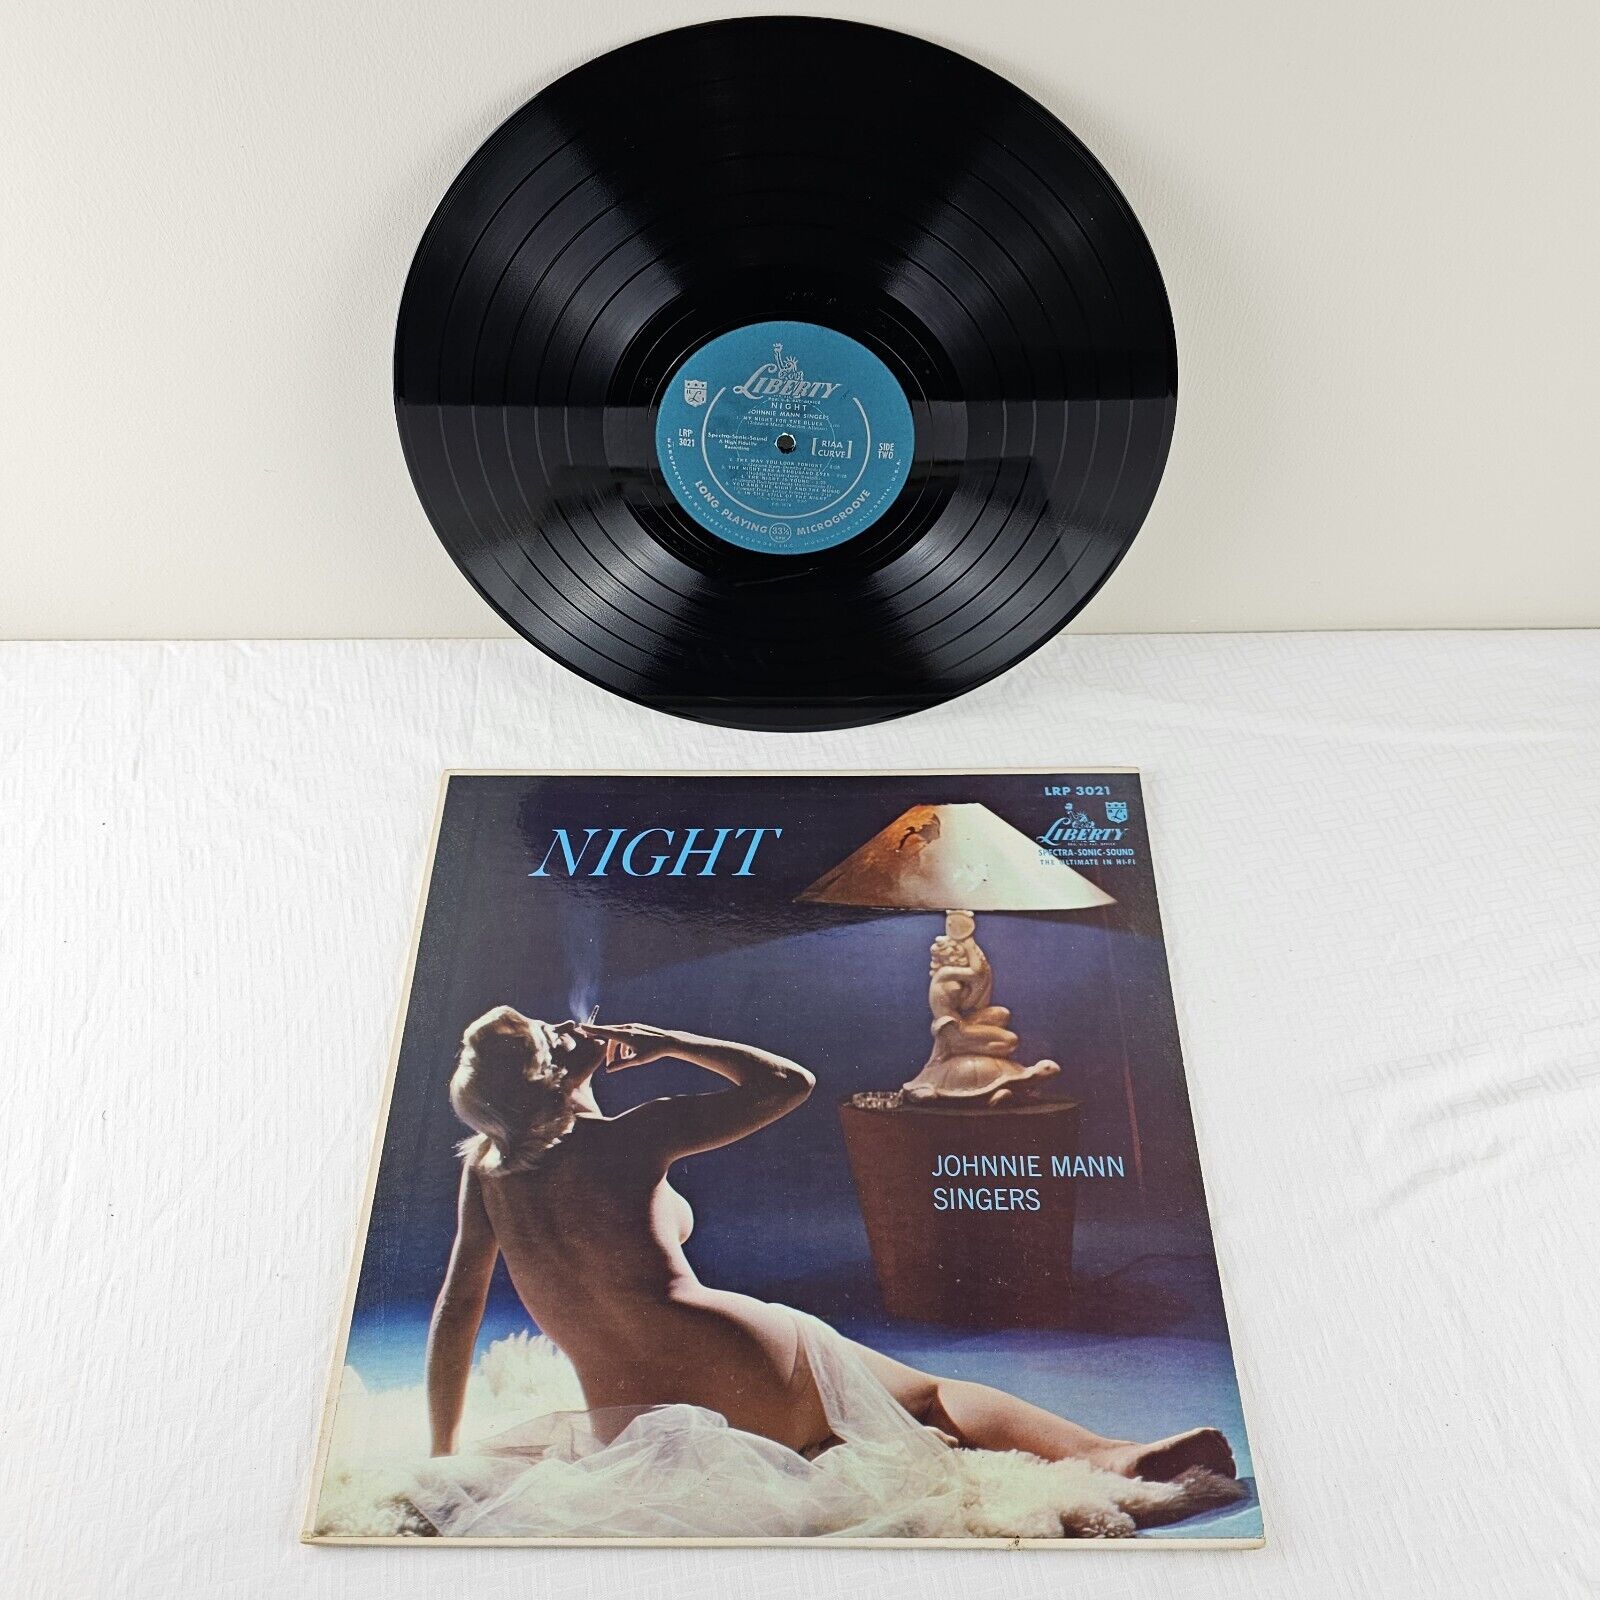 Vintage Vinyl - Johnnie Mann Singers - Night - Record Album